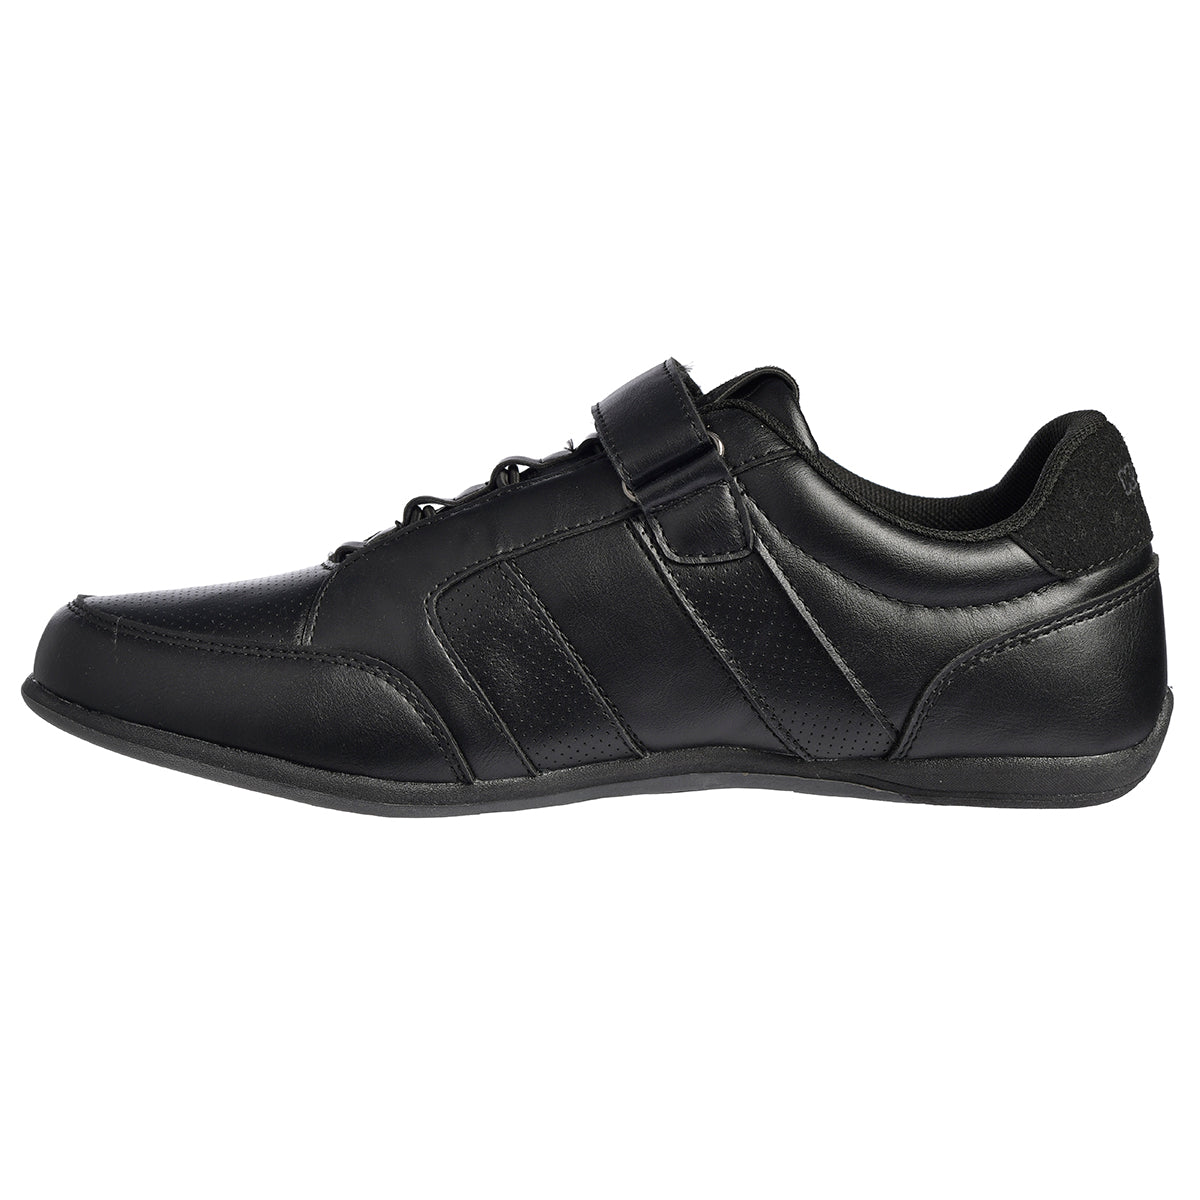 Sneakers Parra  Noir Homme - image 2